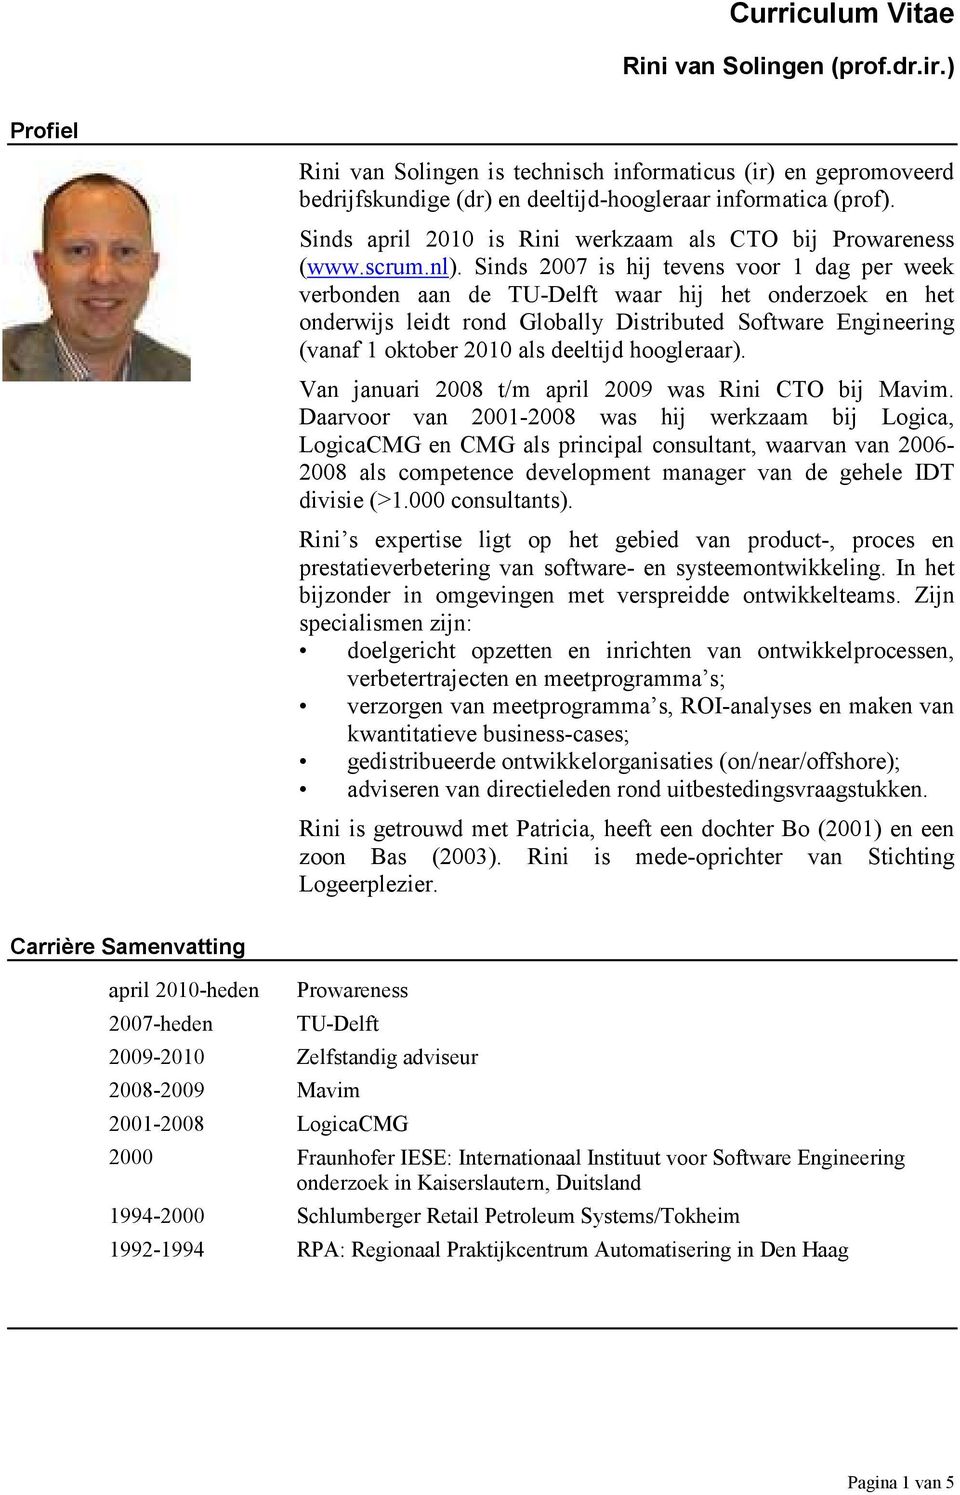 Sinds 2007 is hij tevens voor 1 dag per week verbonden aan de TU-Delft waar hij het onderzoek en het onderwijs leidt rond Globally Distributed Software Engineering (vanaf 1 oktober 2010 als deeltijd